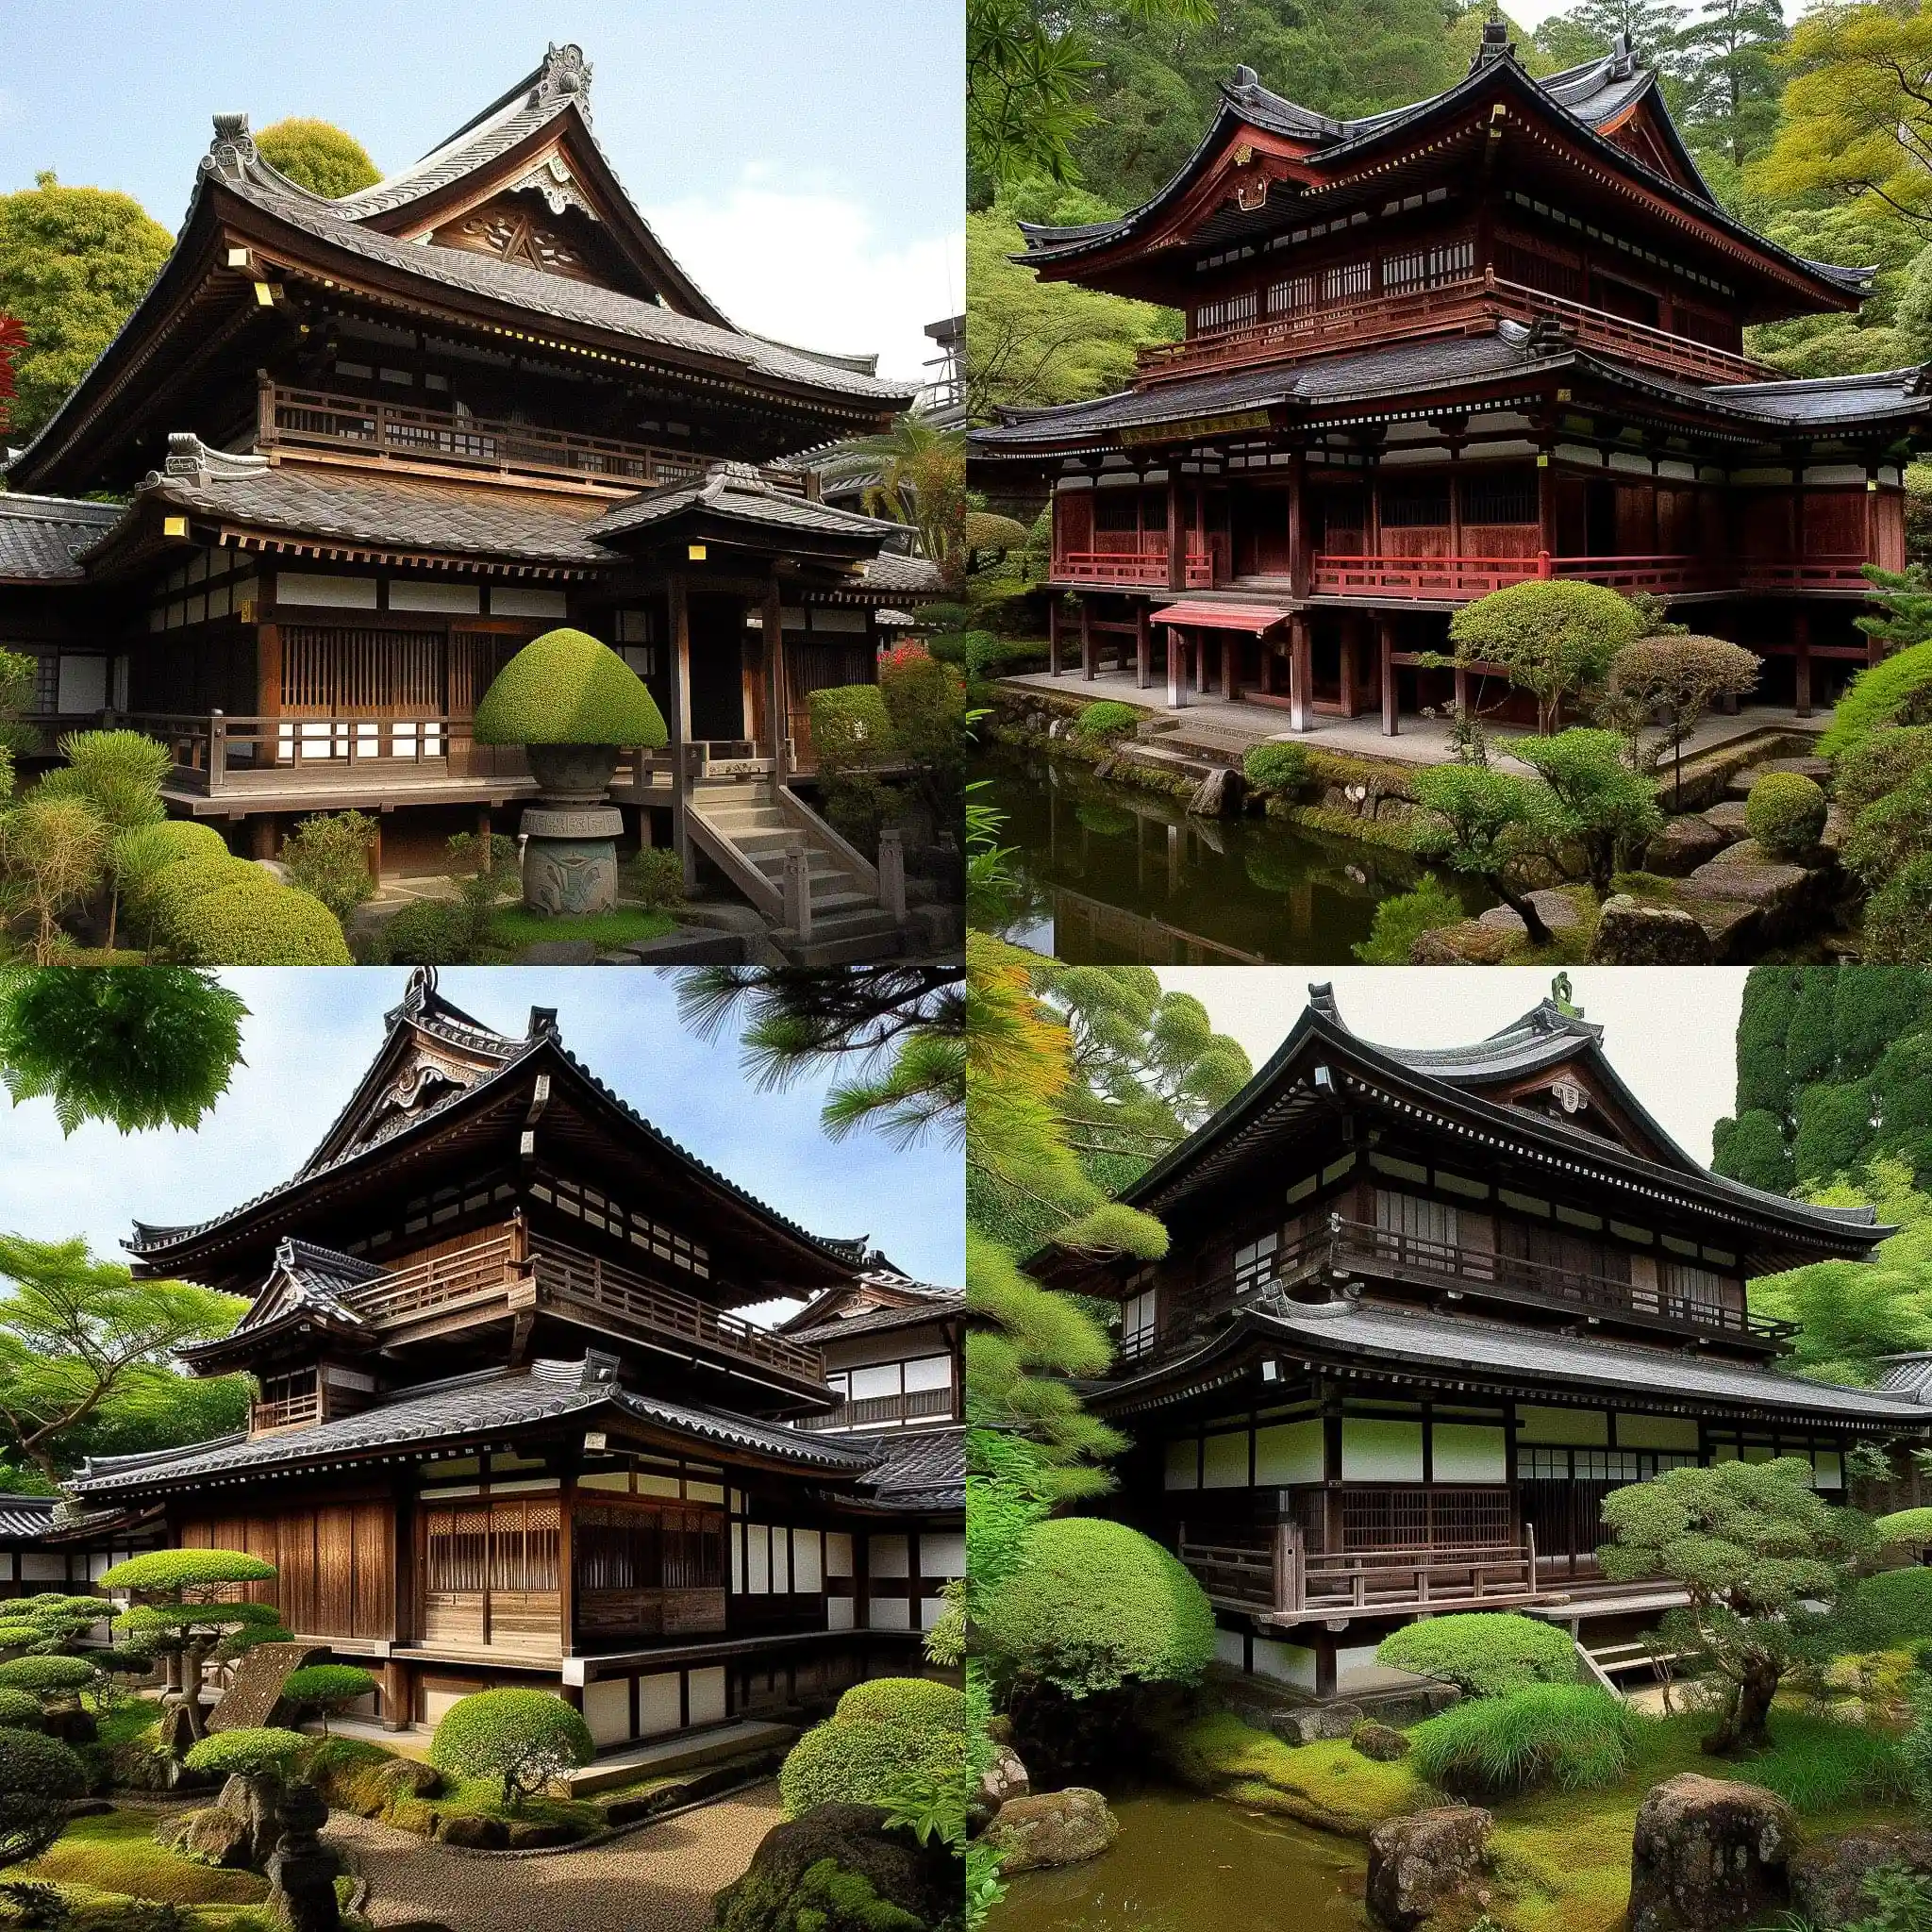 -日本传统建筑 traditional japanese architecture风格midjourney AI绘画作品